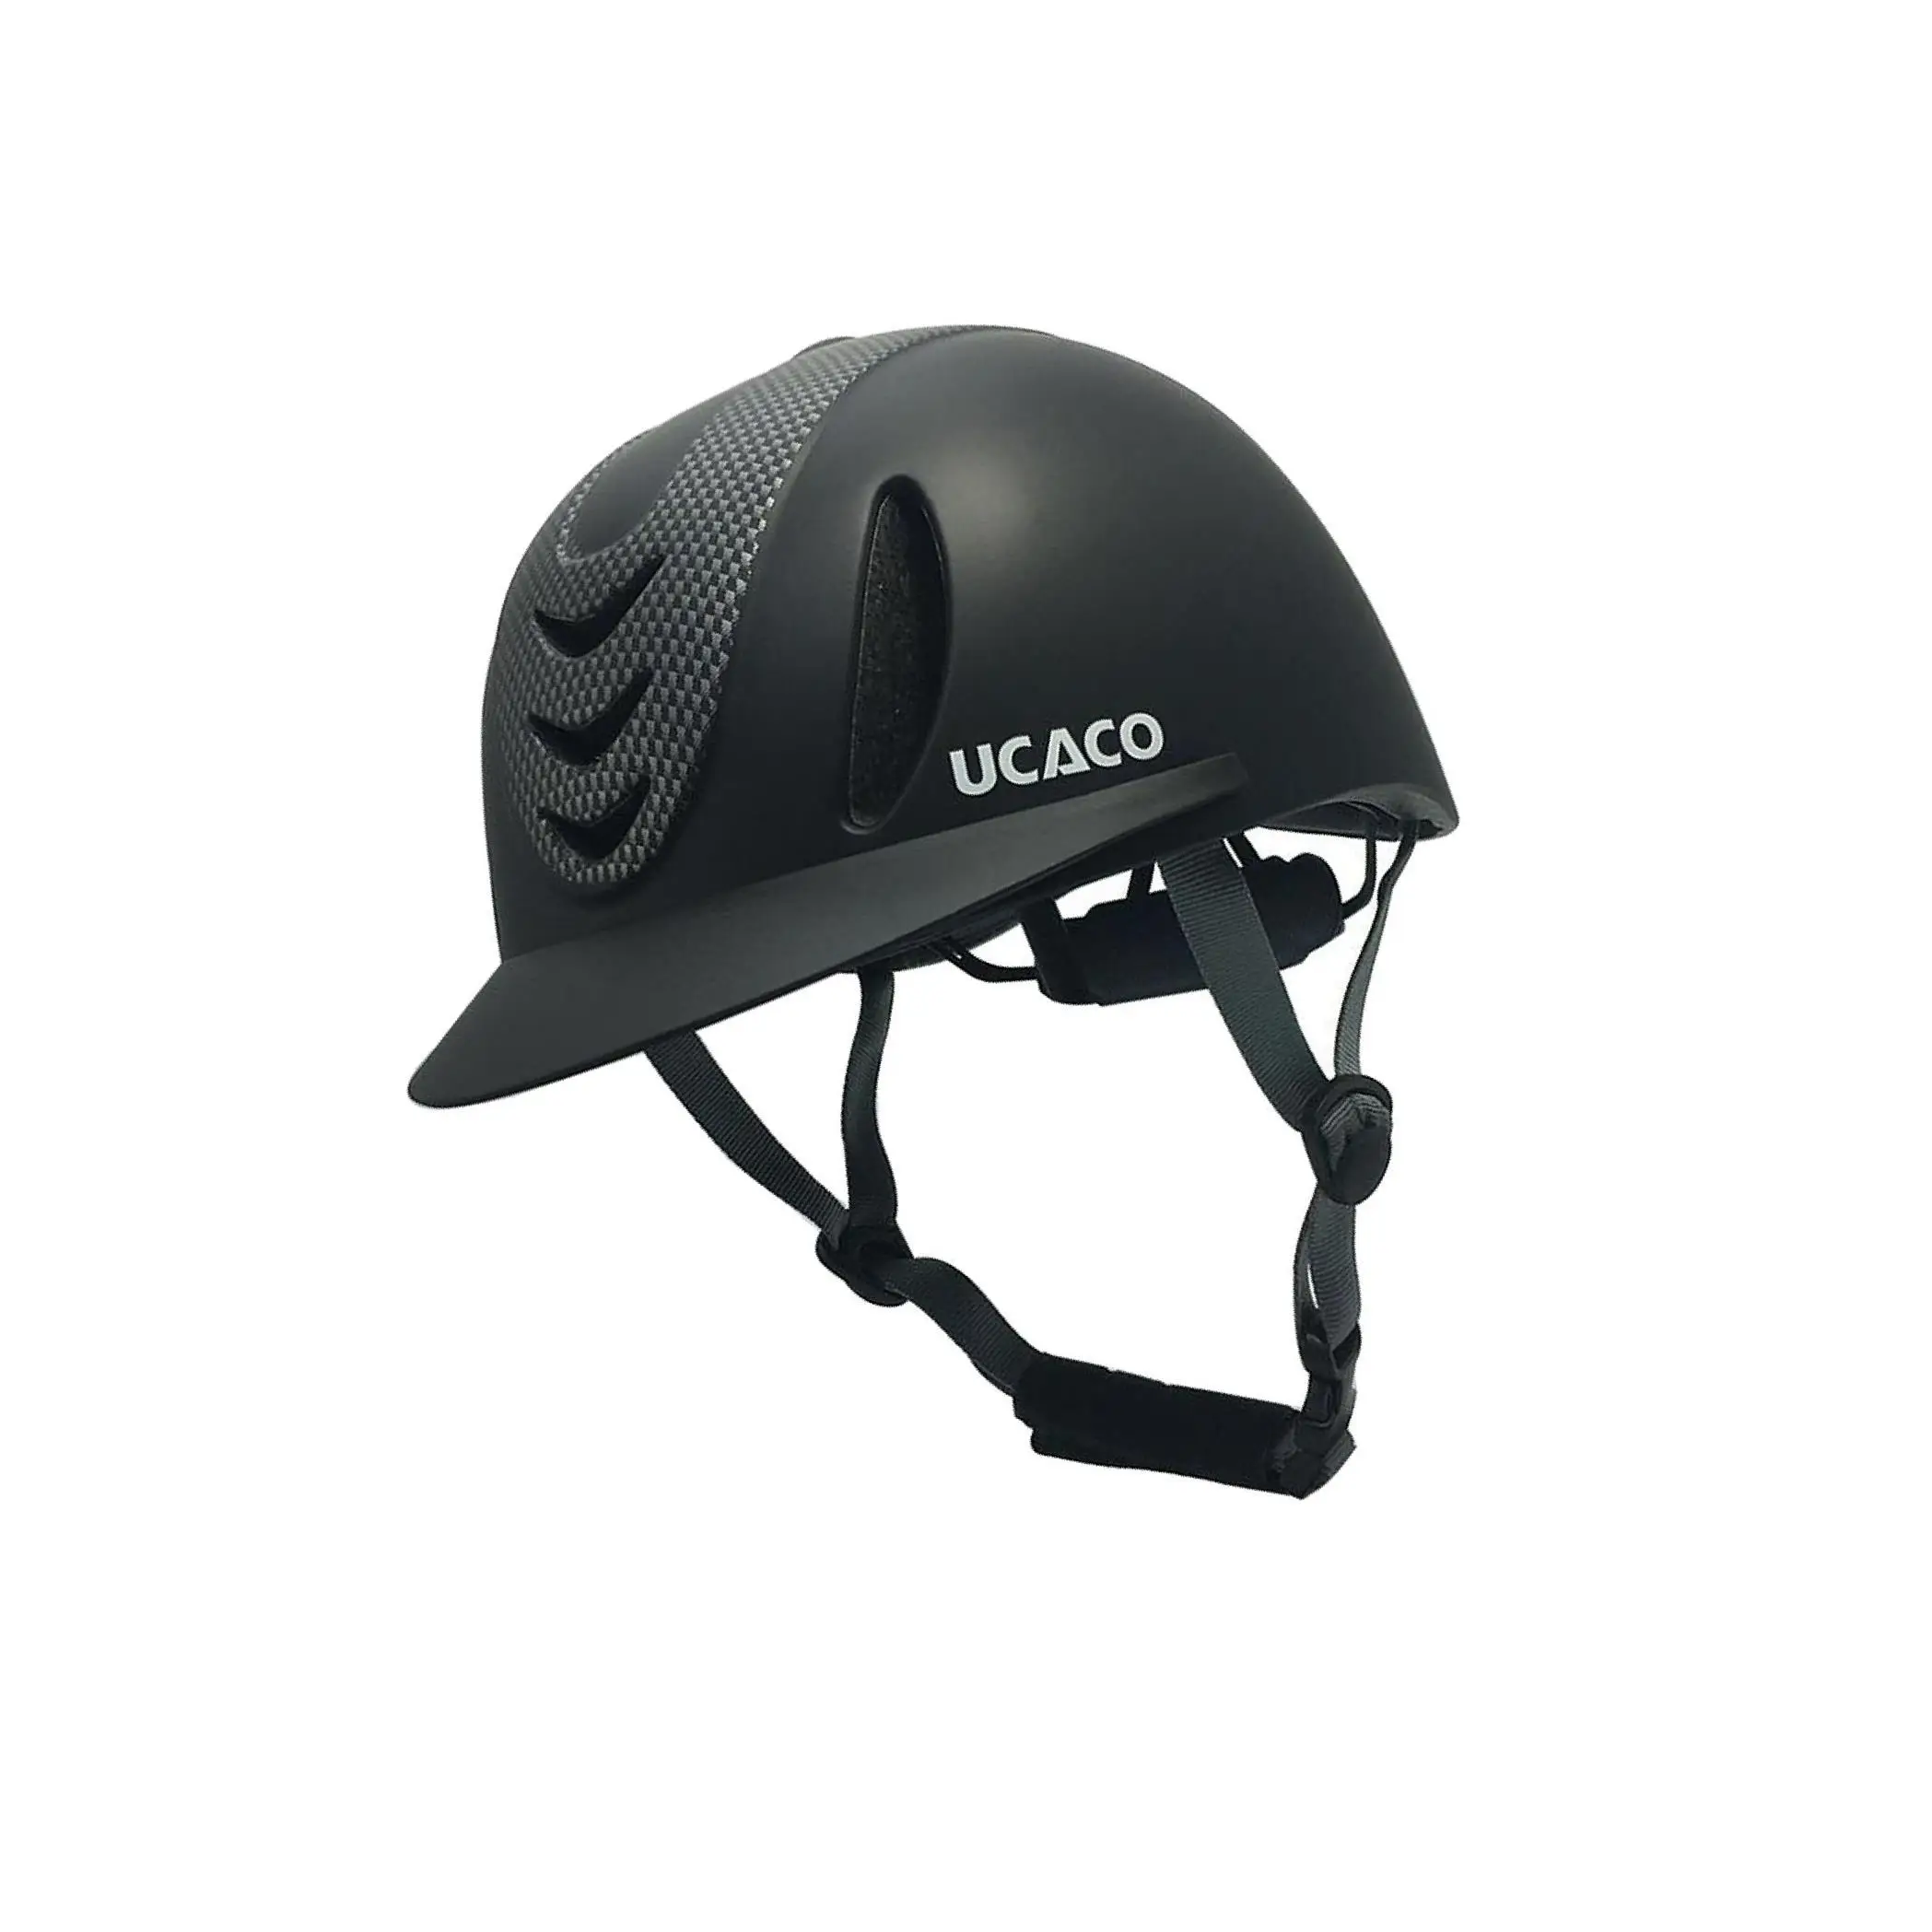 Стартовый шлем для верховой езды, защитный шлем старше 13 лет, полностью черный - 5